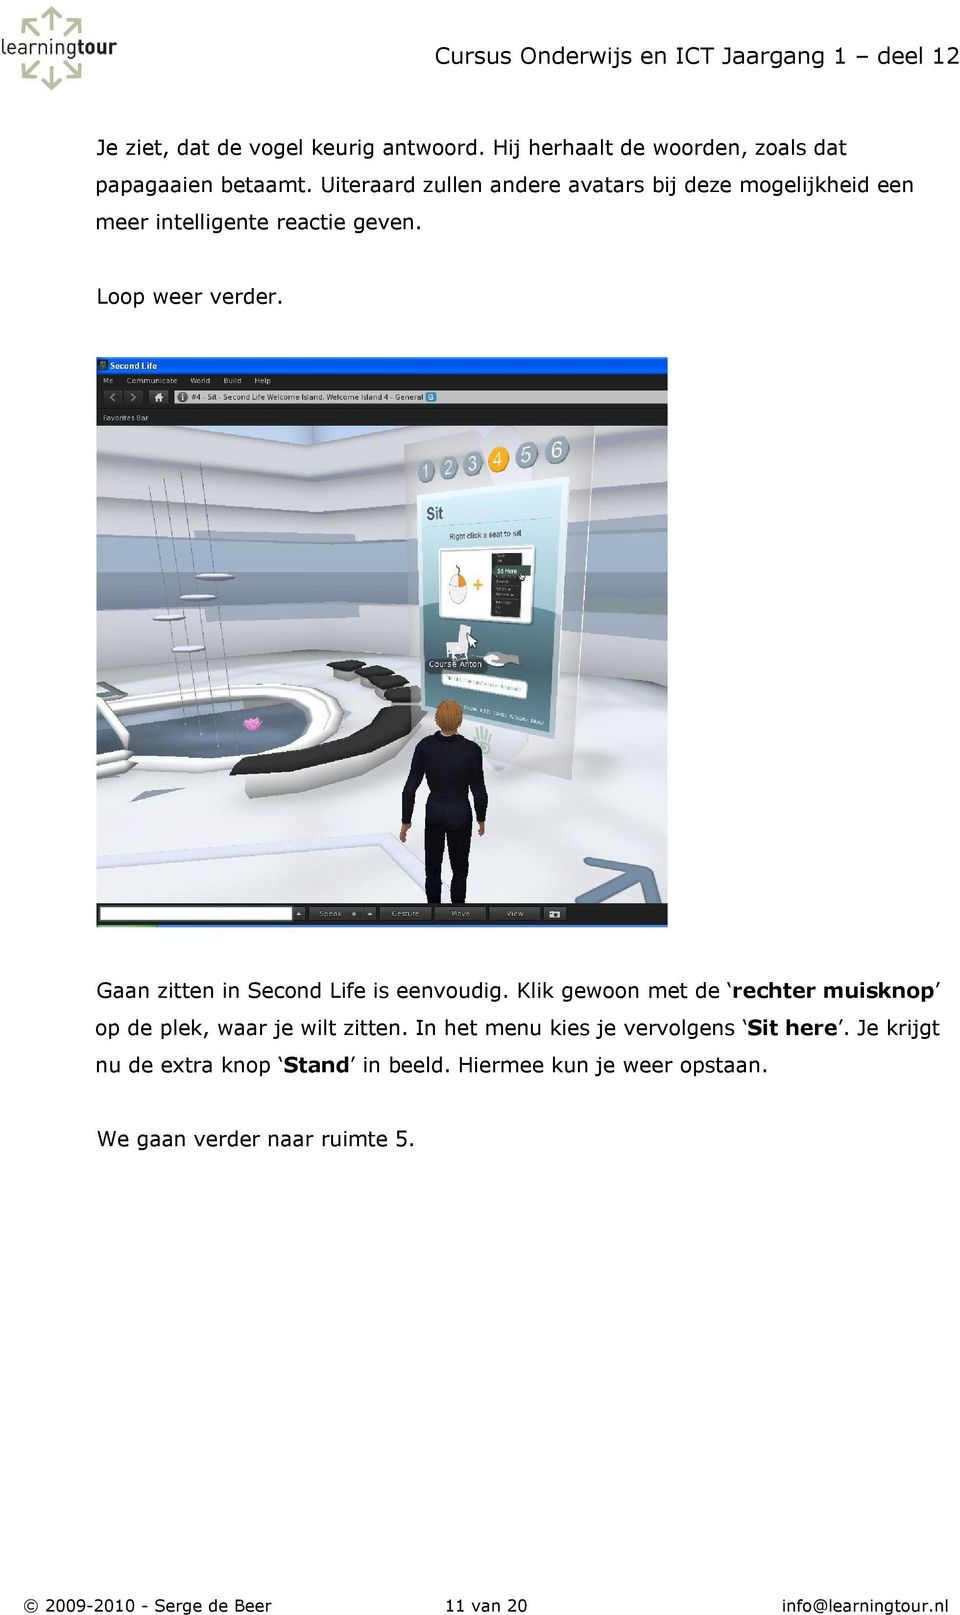 Gaan zitten in Second Life is eenvoudig. Klik gewoon met de rechter muisknop op de plek, waar je wilt zitten.